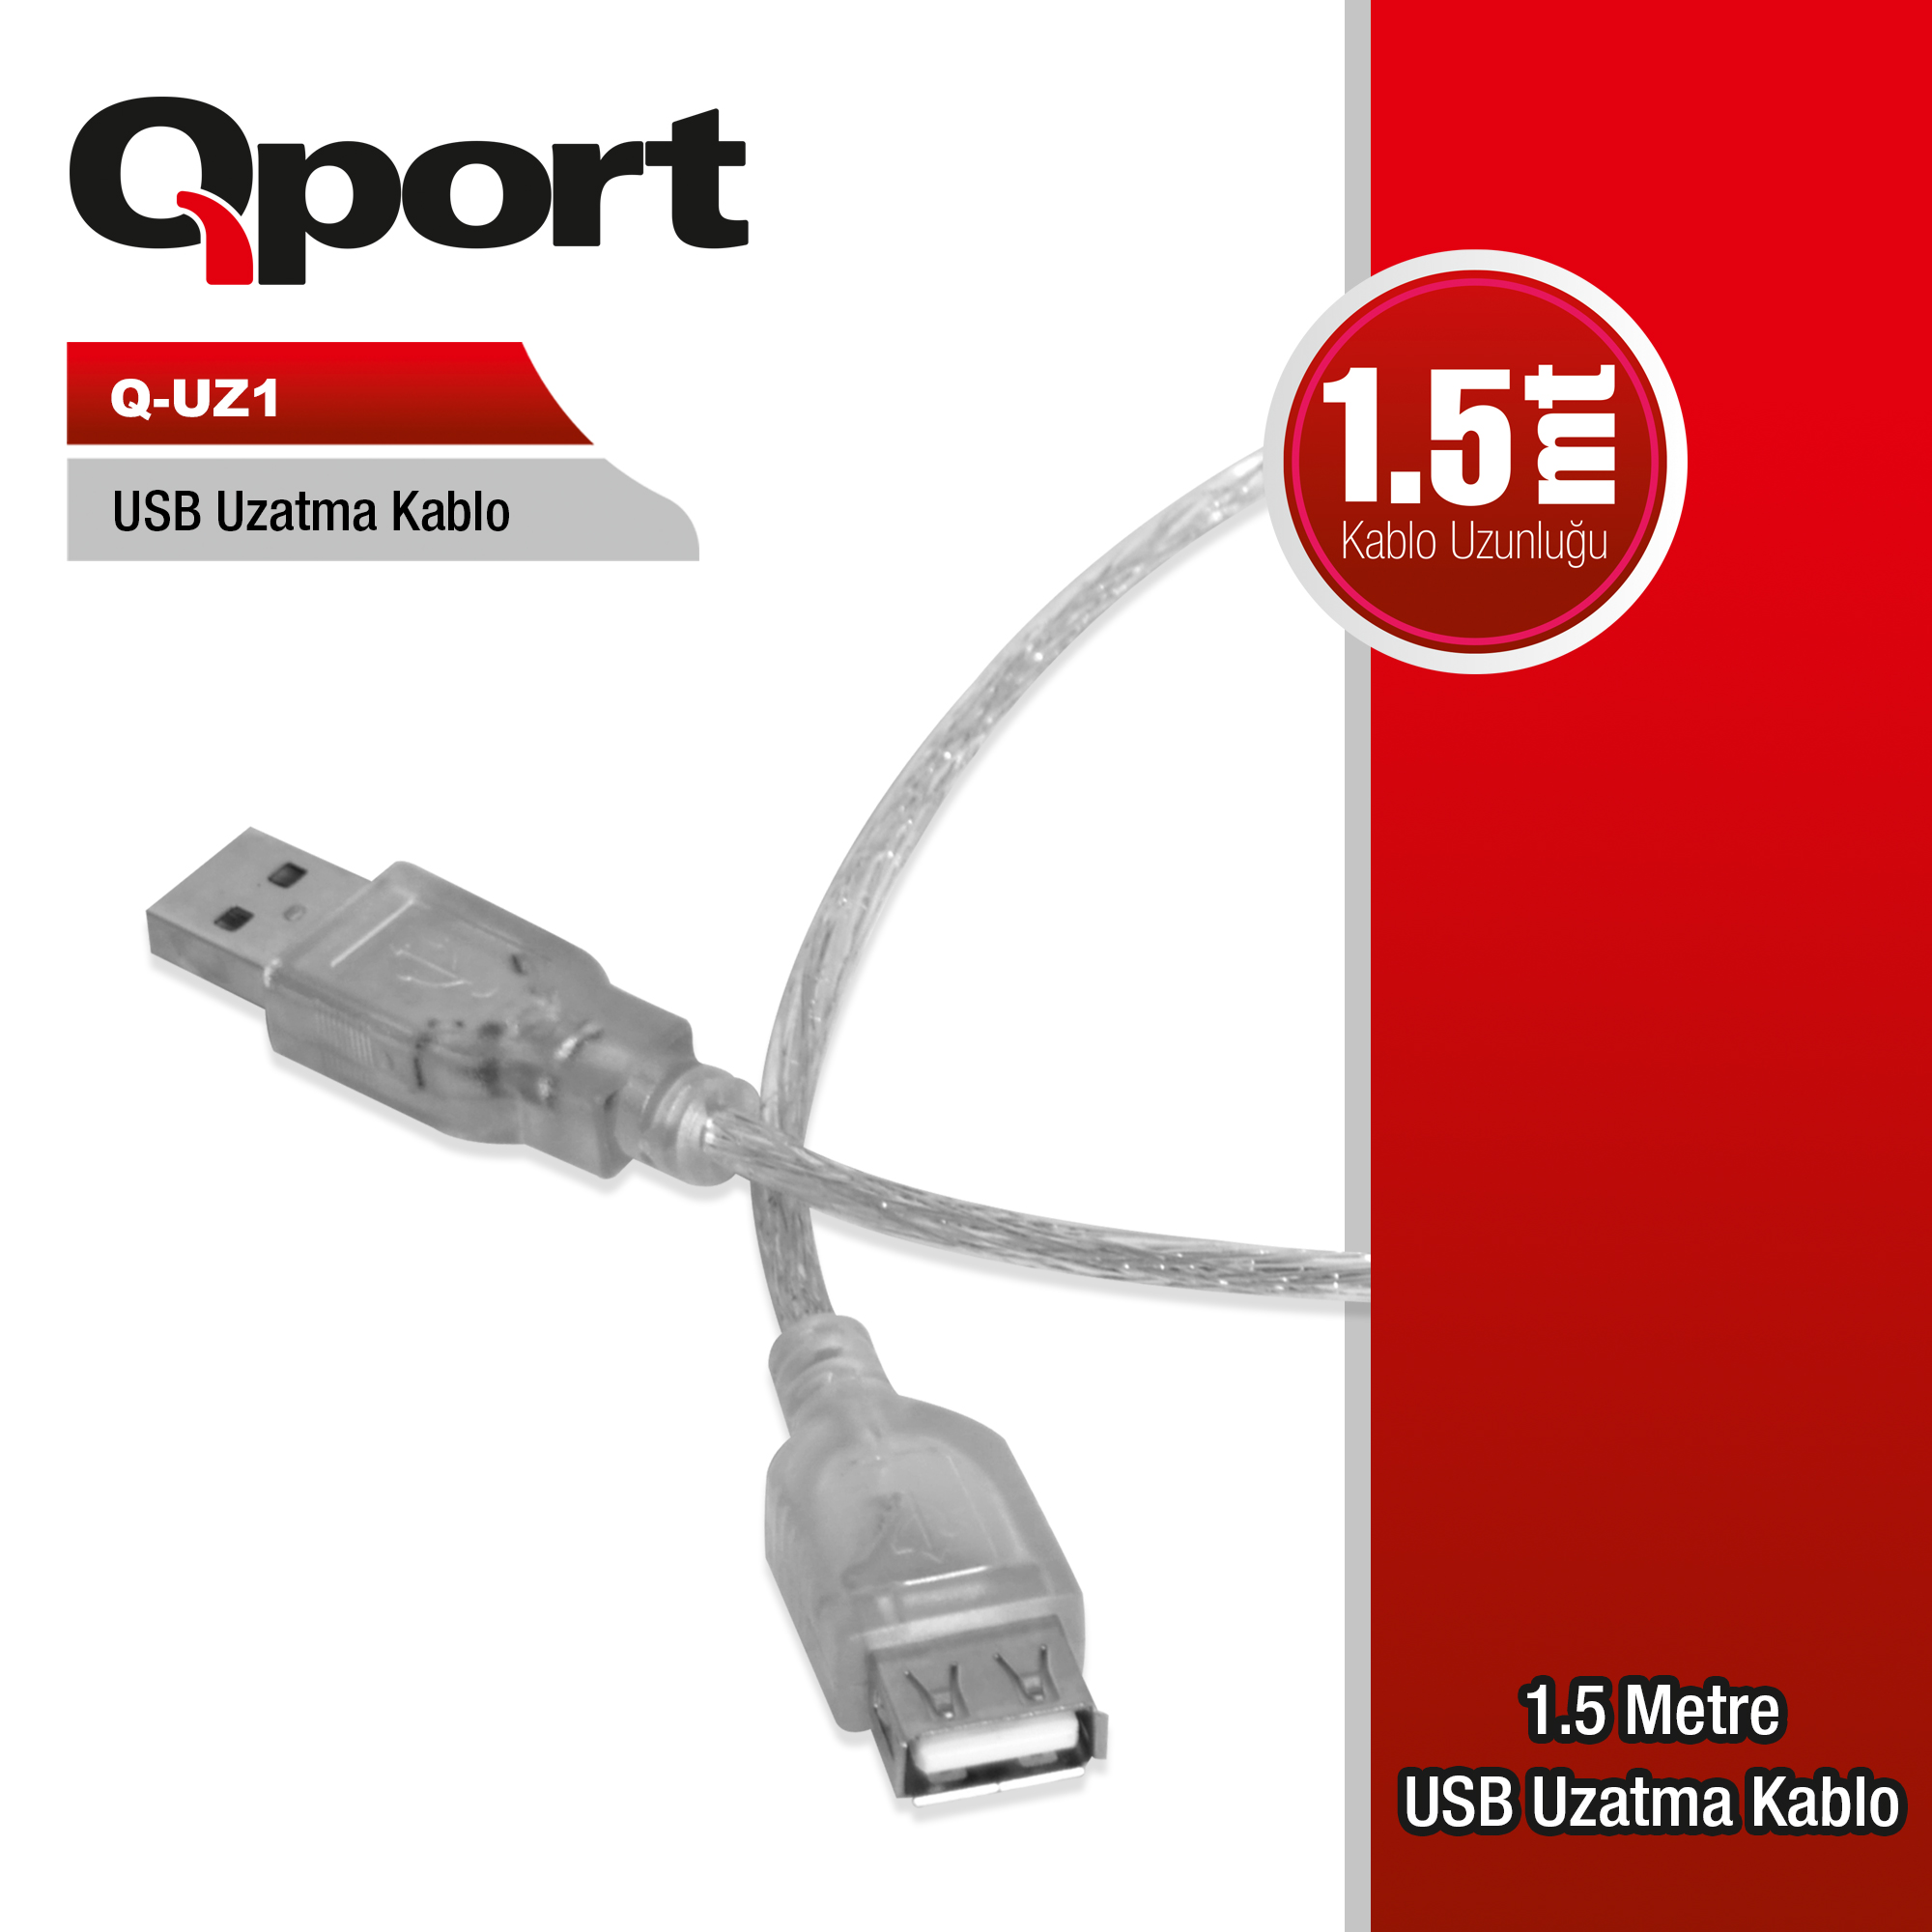 QPORT USB2.0 1.5MT UZATMA KABLOSU (Q-UZ1)